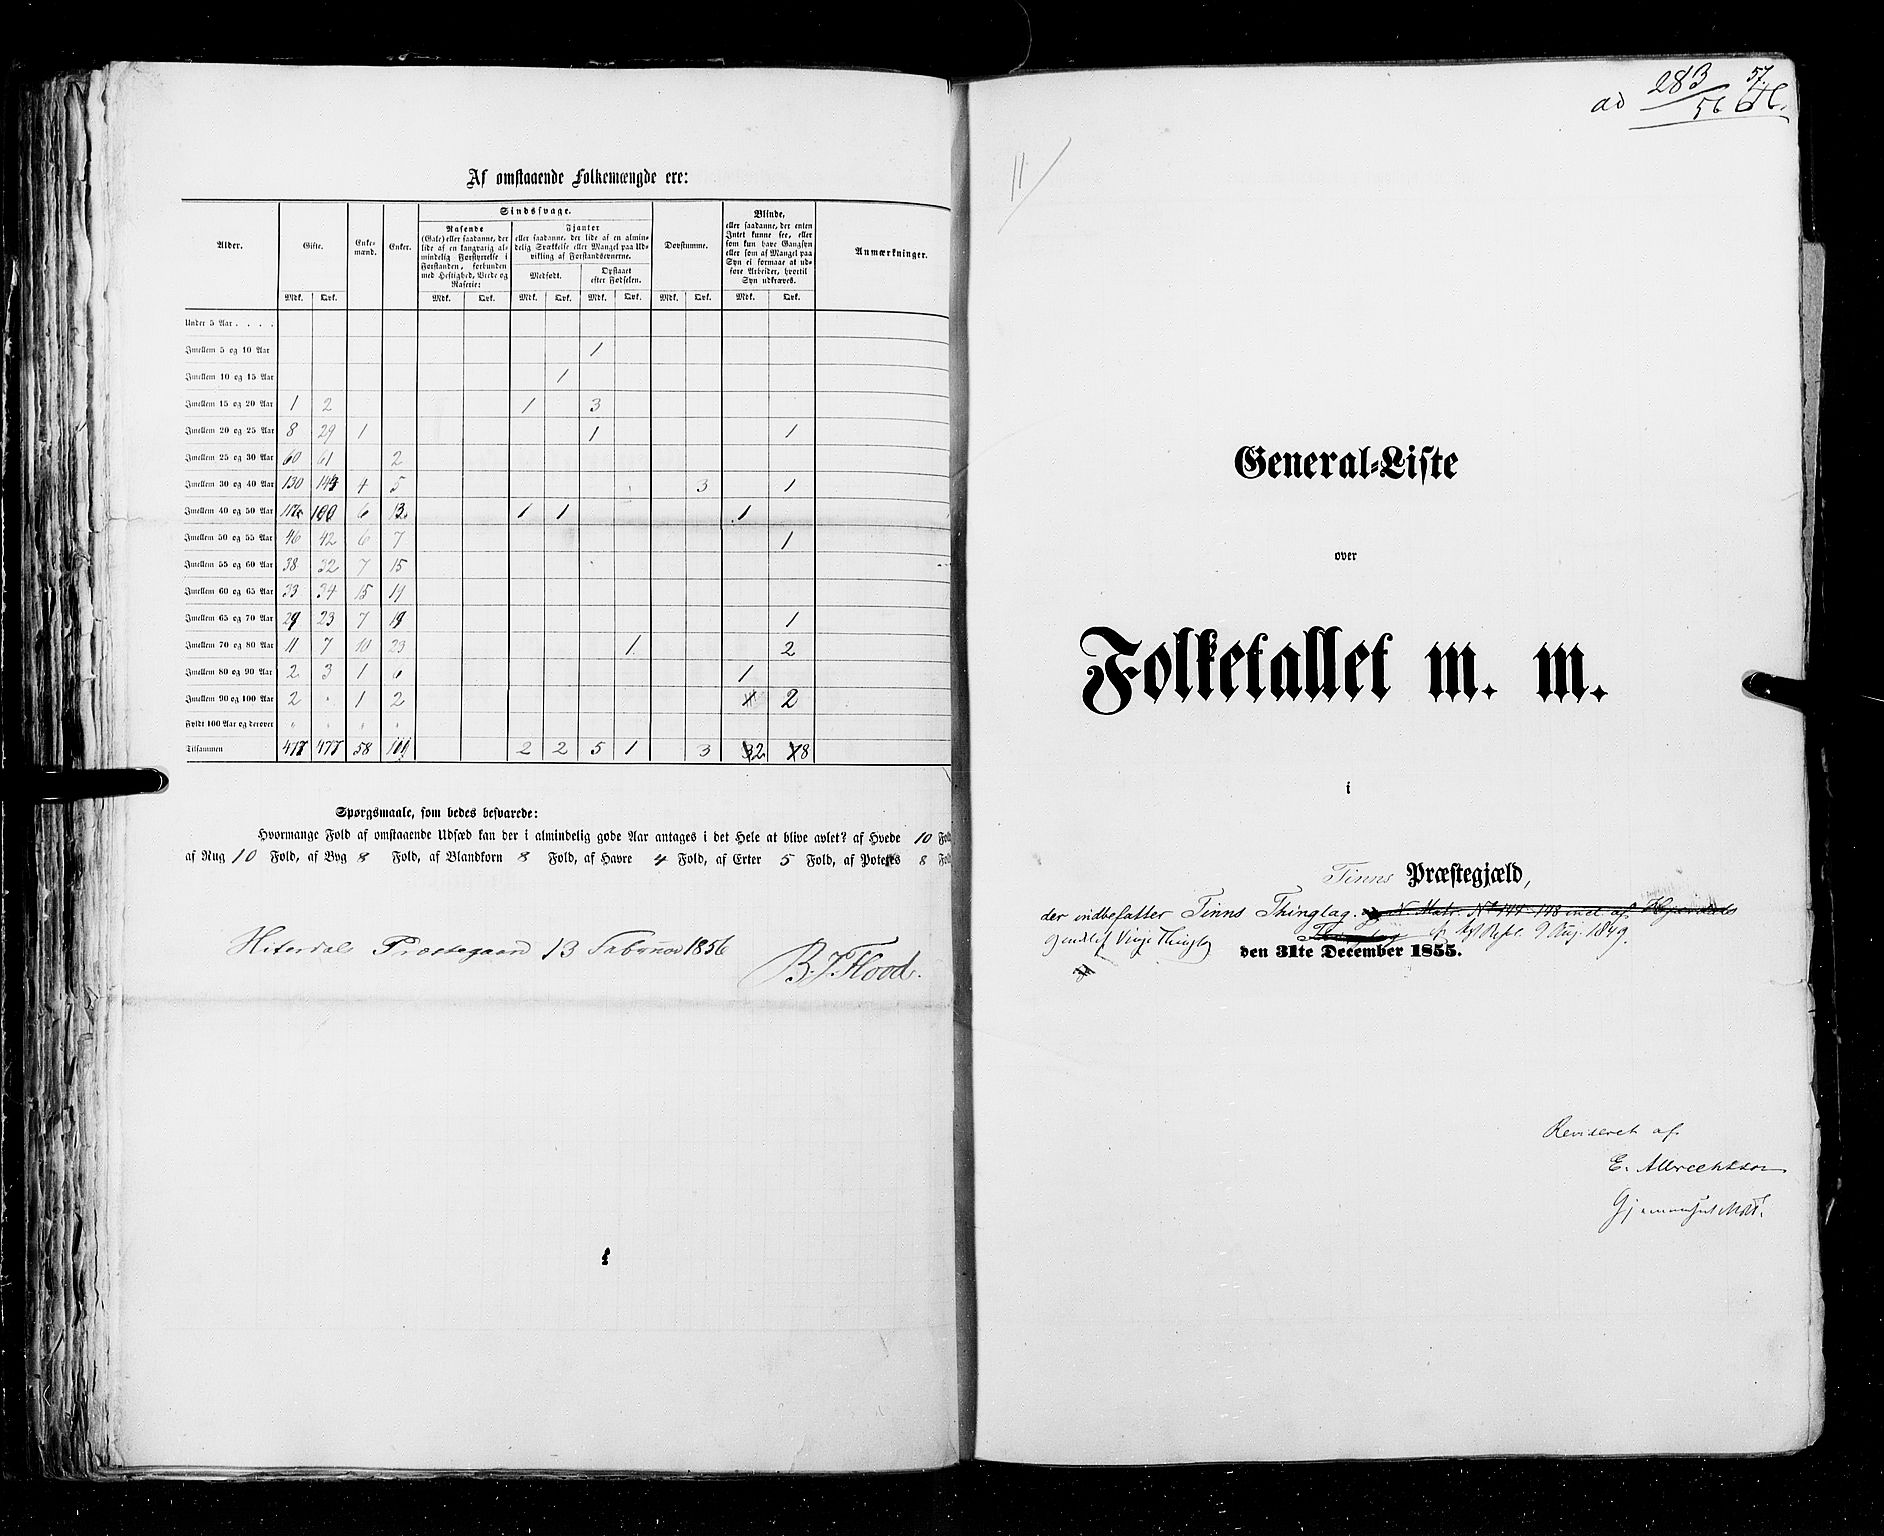 RA, Census 1855, vol. 3: Bratsberg amt, Nedenes amt og Lister og Mandal amt, 1855, p. 57